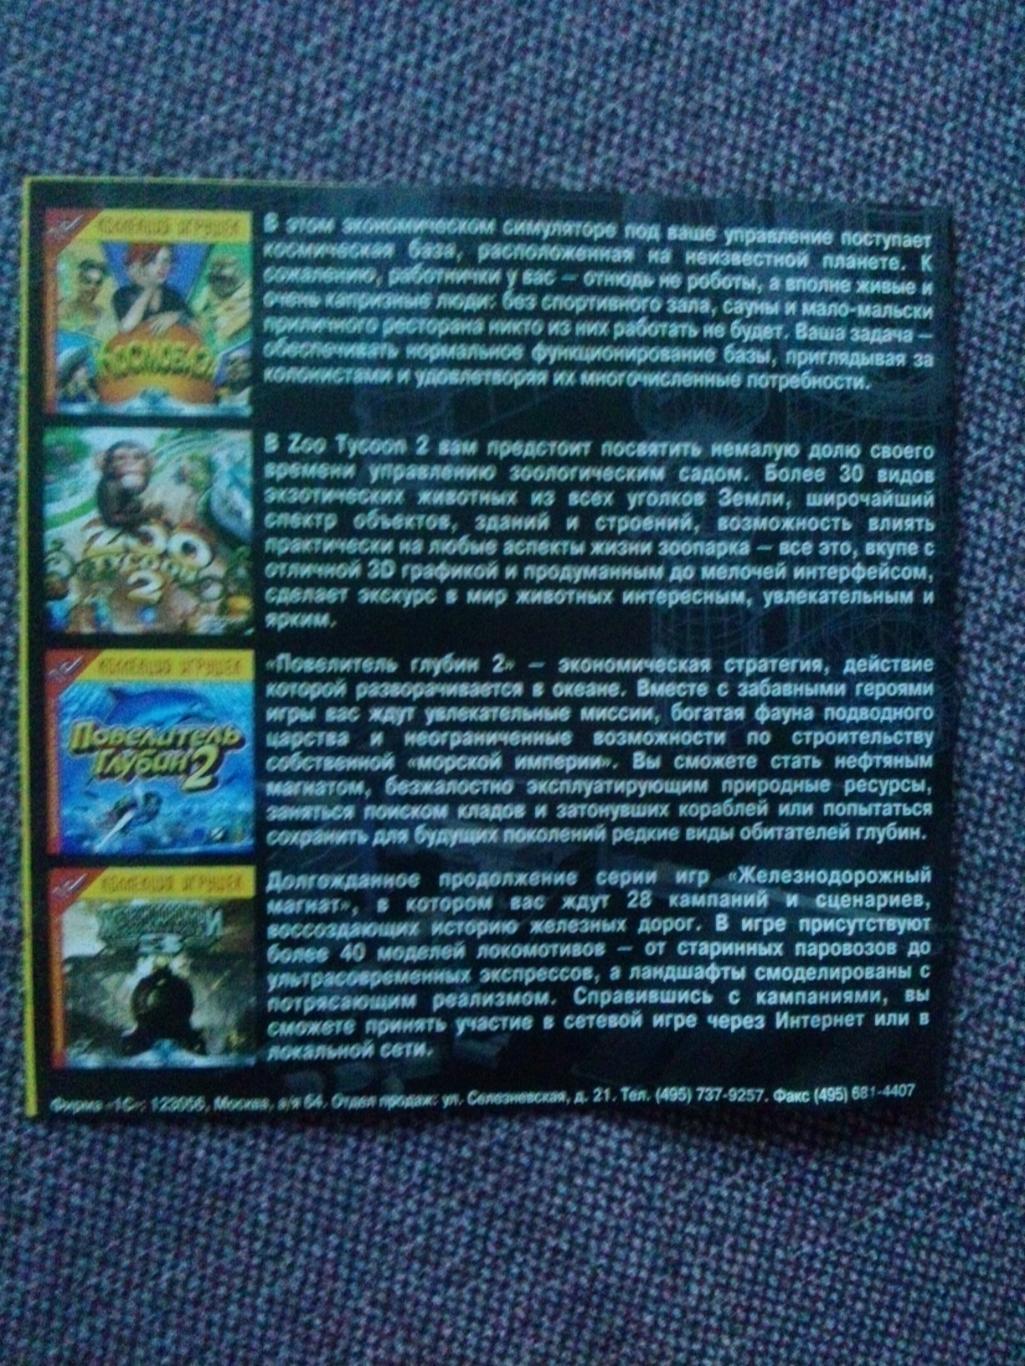 PC - DVD : Космическая станция (Игра для компьютера) Космос Космонавтика 1